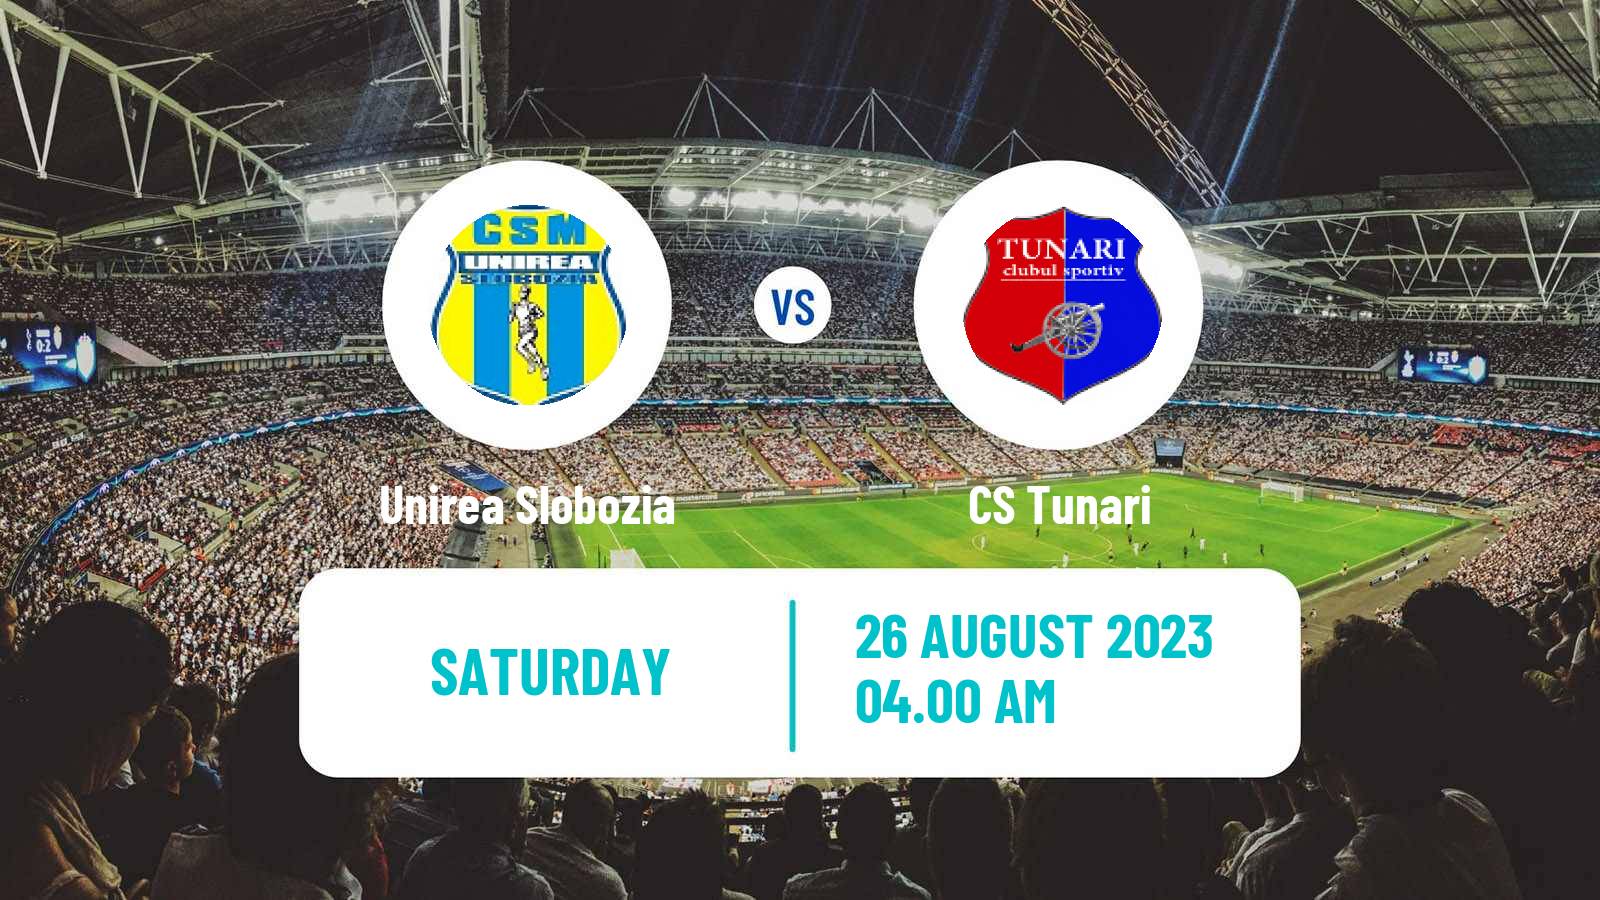 Soccer Romanian Division 2 Unirea Slobozia - Tunari